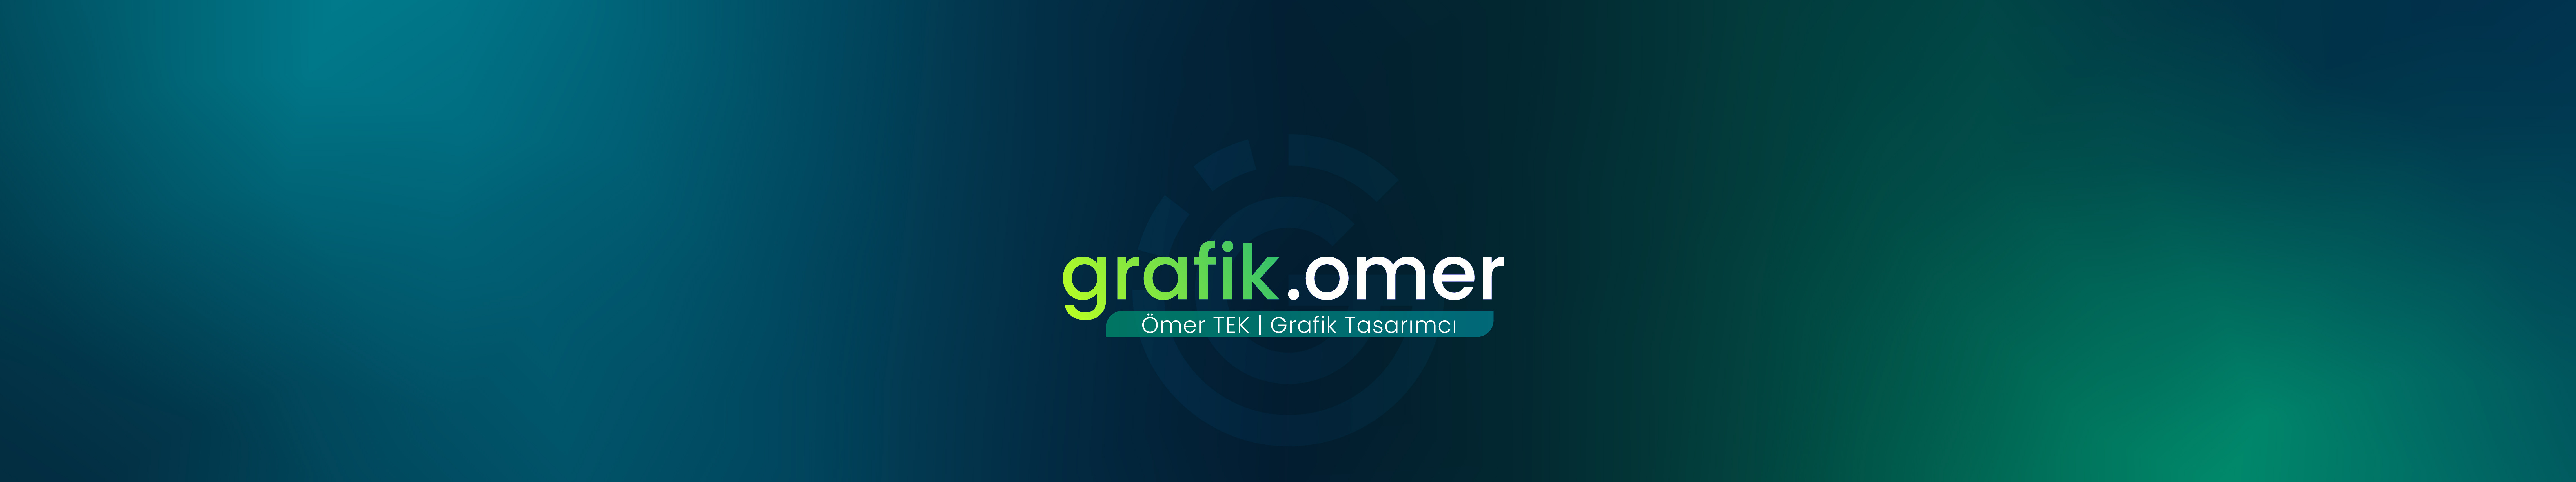 Ömer Tek's profile banner